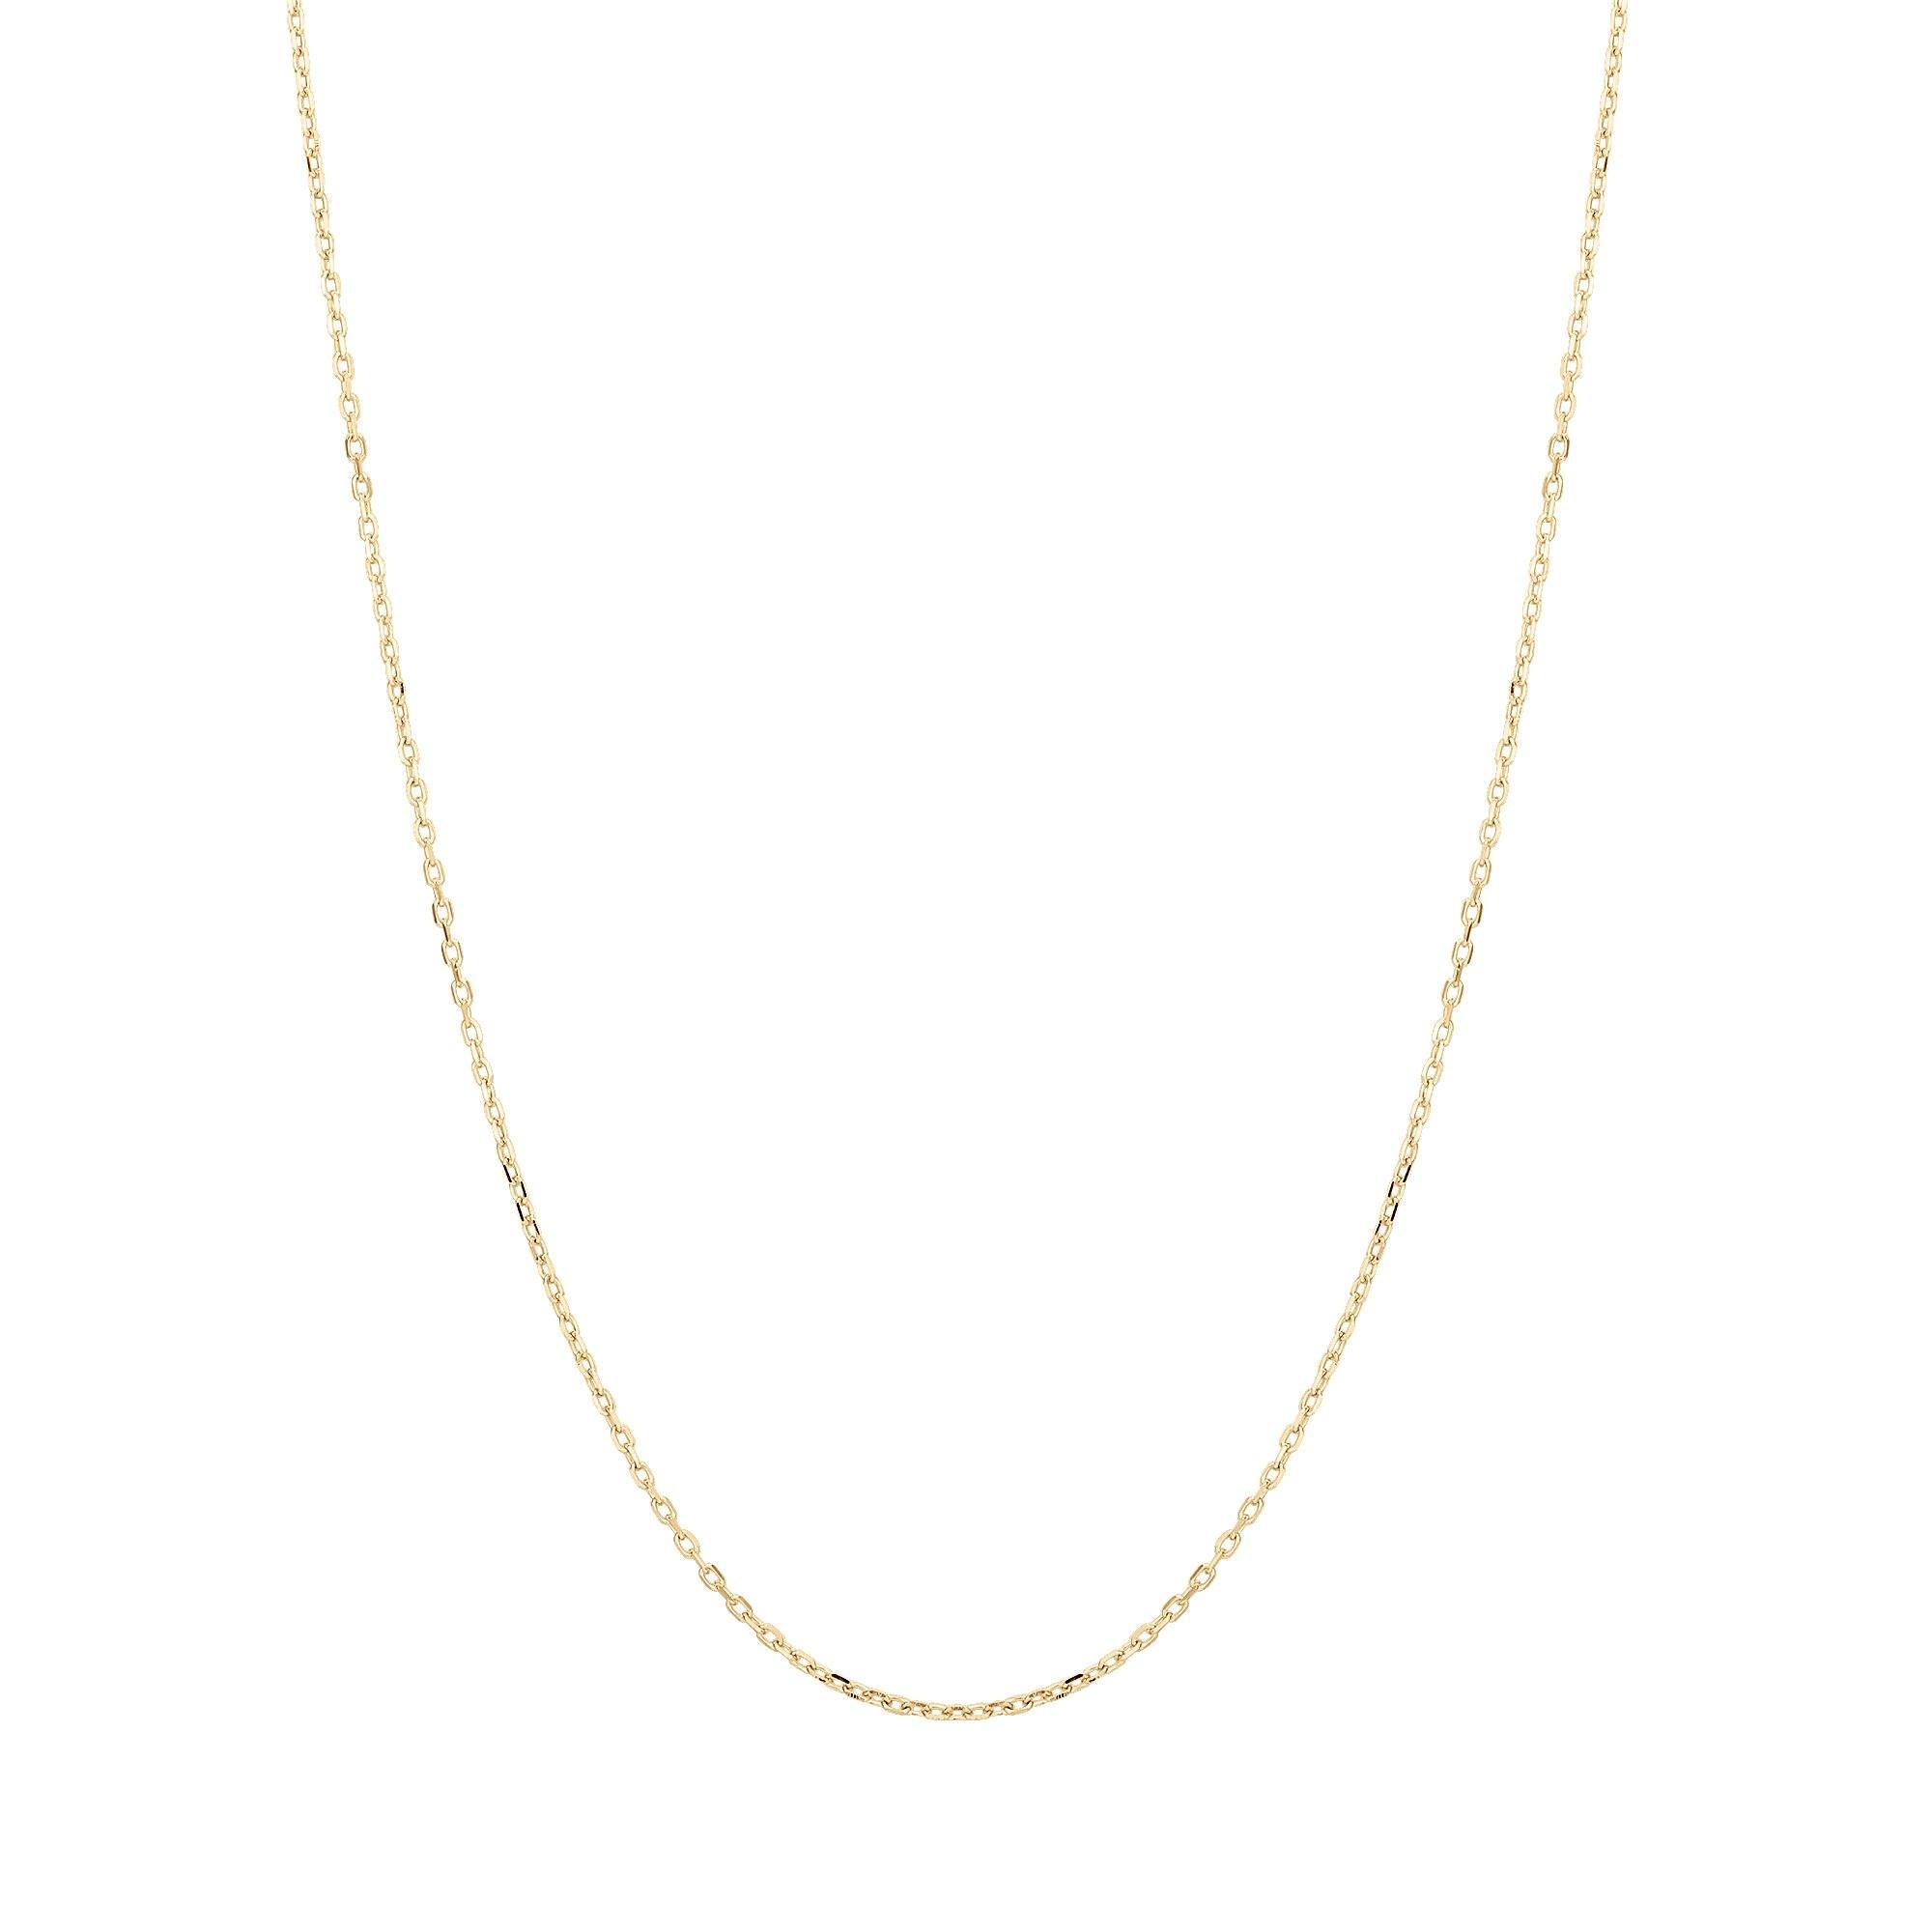 All 14k Gold Necklaces & Pendants – AURELIE GI